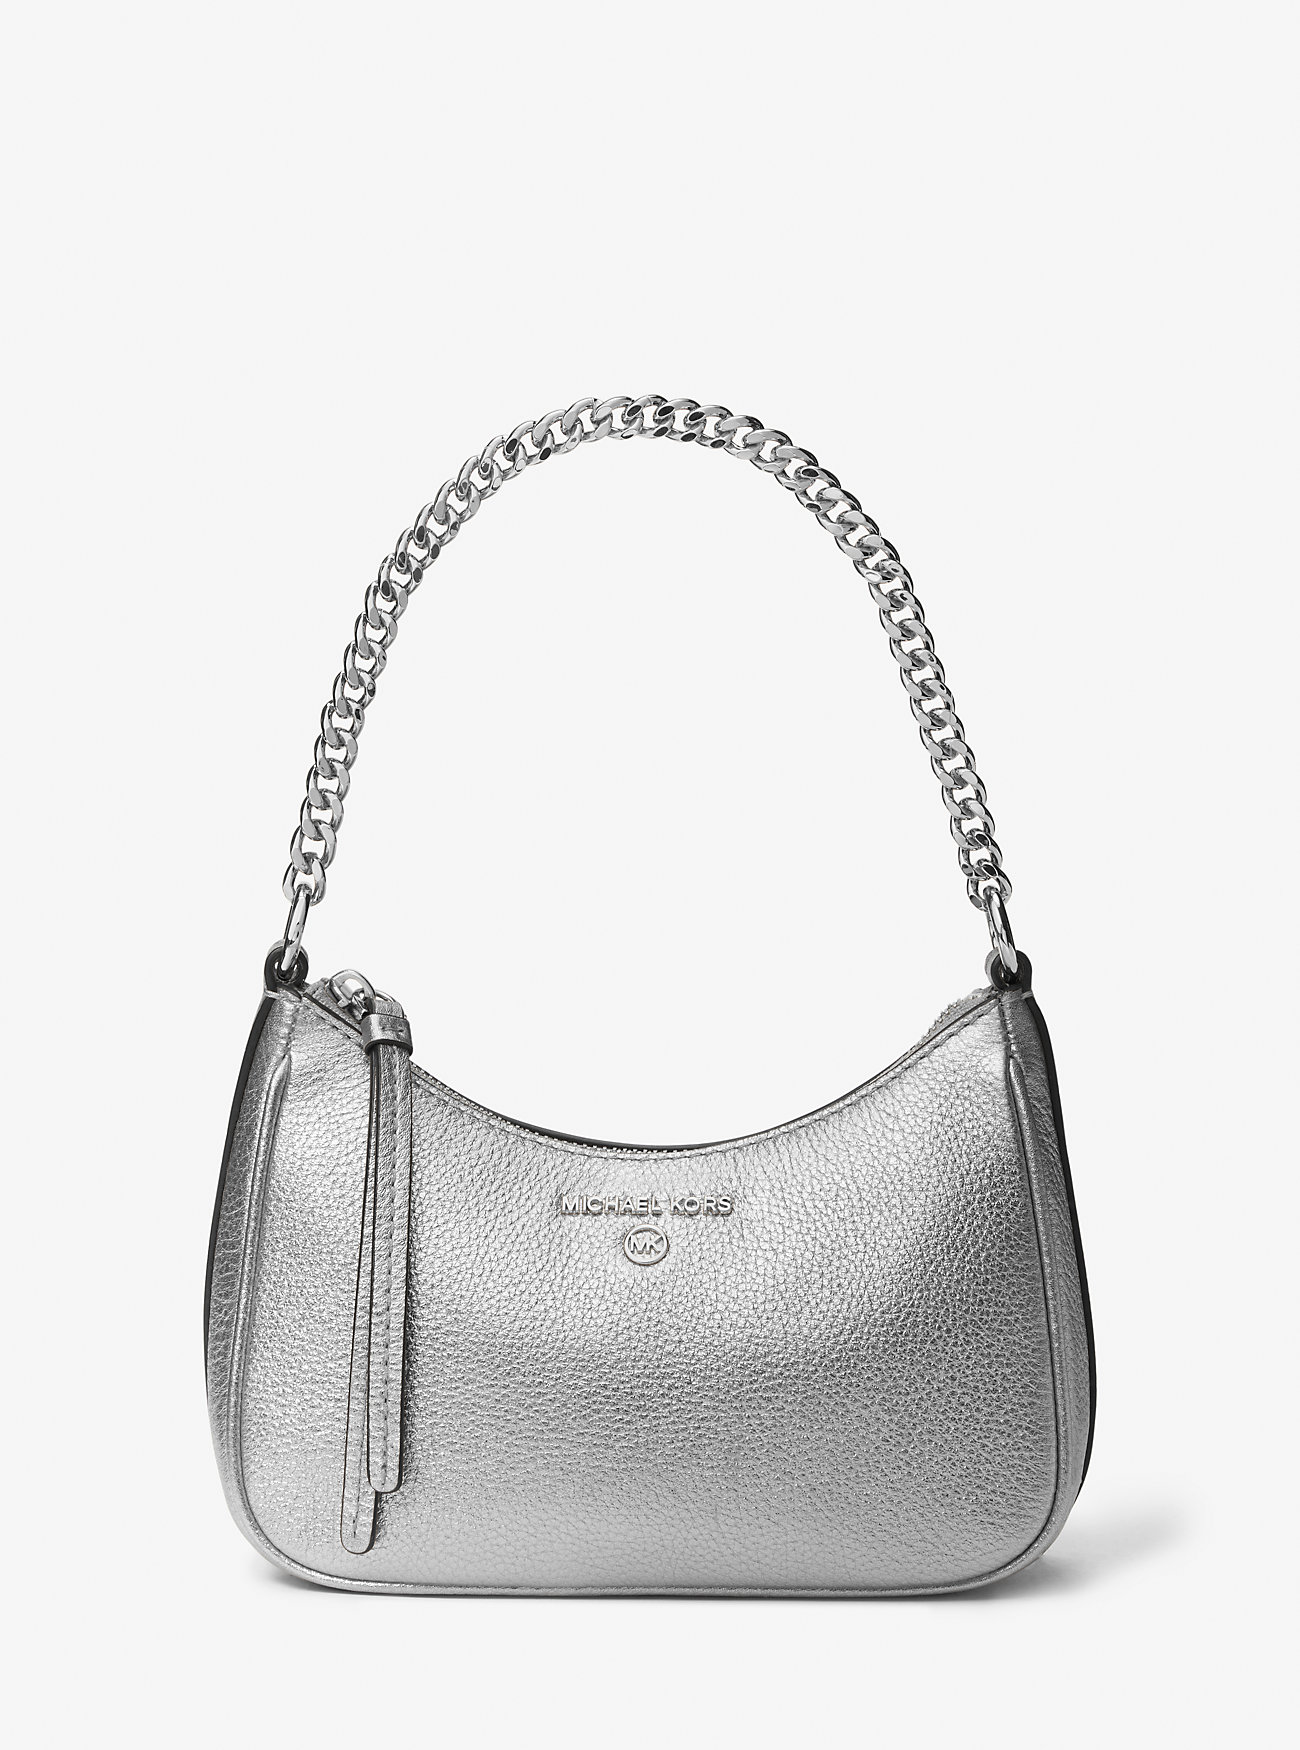 цена Маленькая кожаная сумка-кошелек цвета металлик с подвеской Jet Set Michael Kors, серебряный